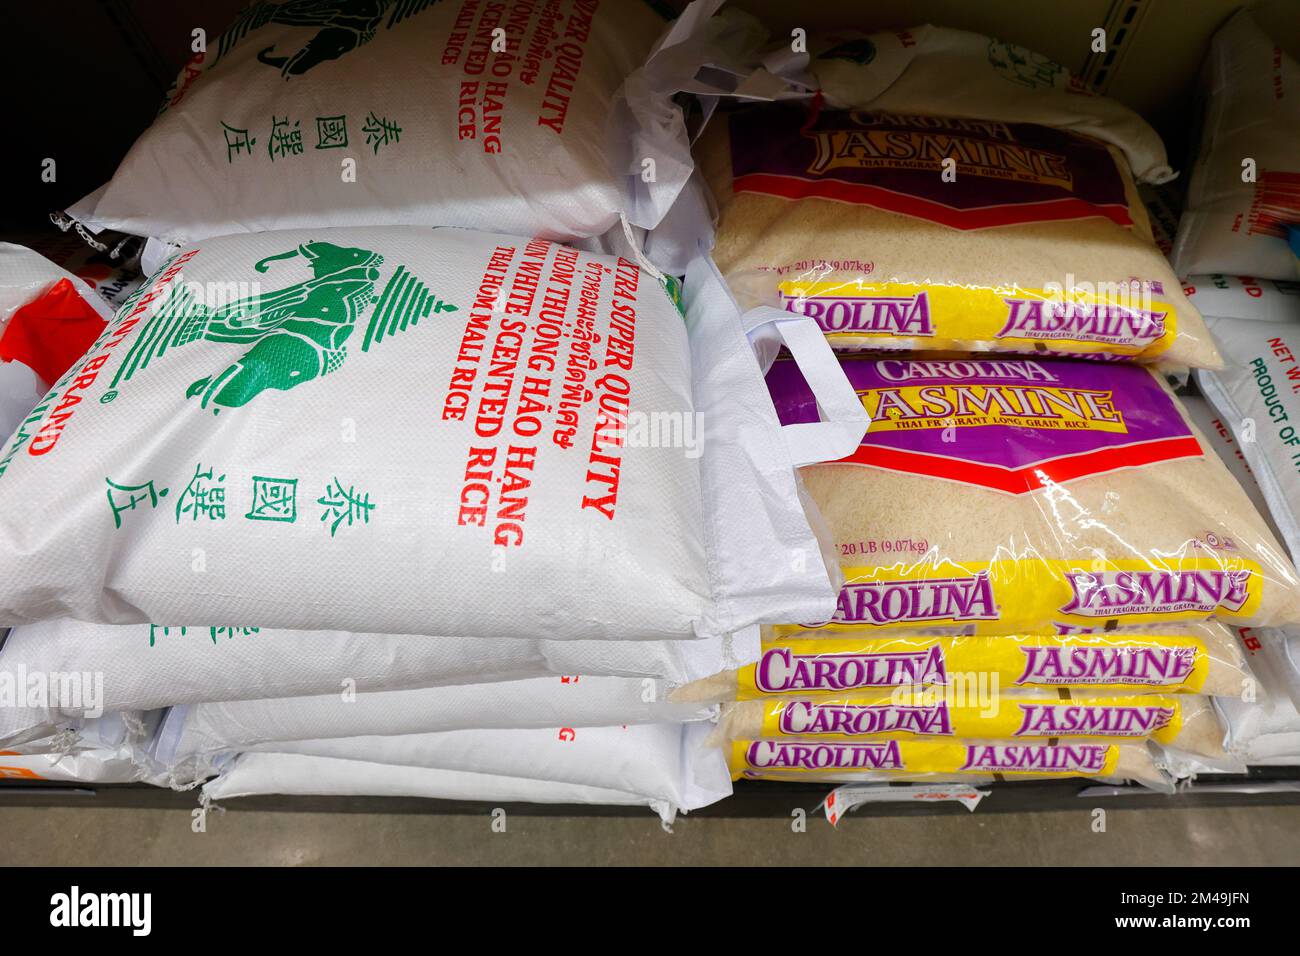 Sacchi di tre Elephant, e Carolina Jasmine riso su uno scaffale supermercato in un negozio di alimentari asiatico. Foto Stock